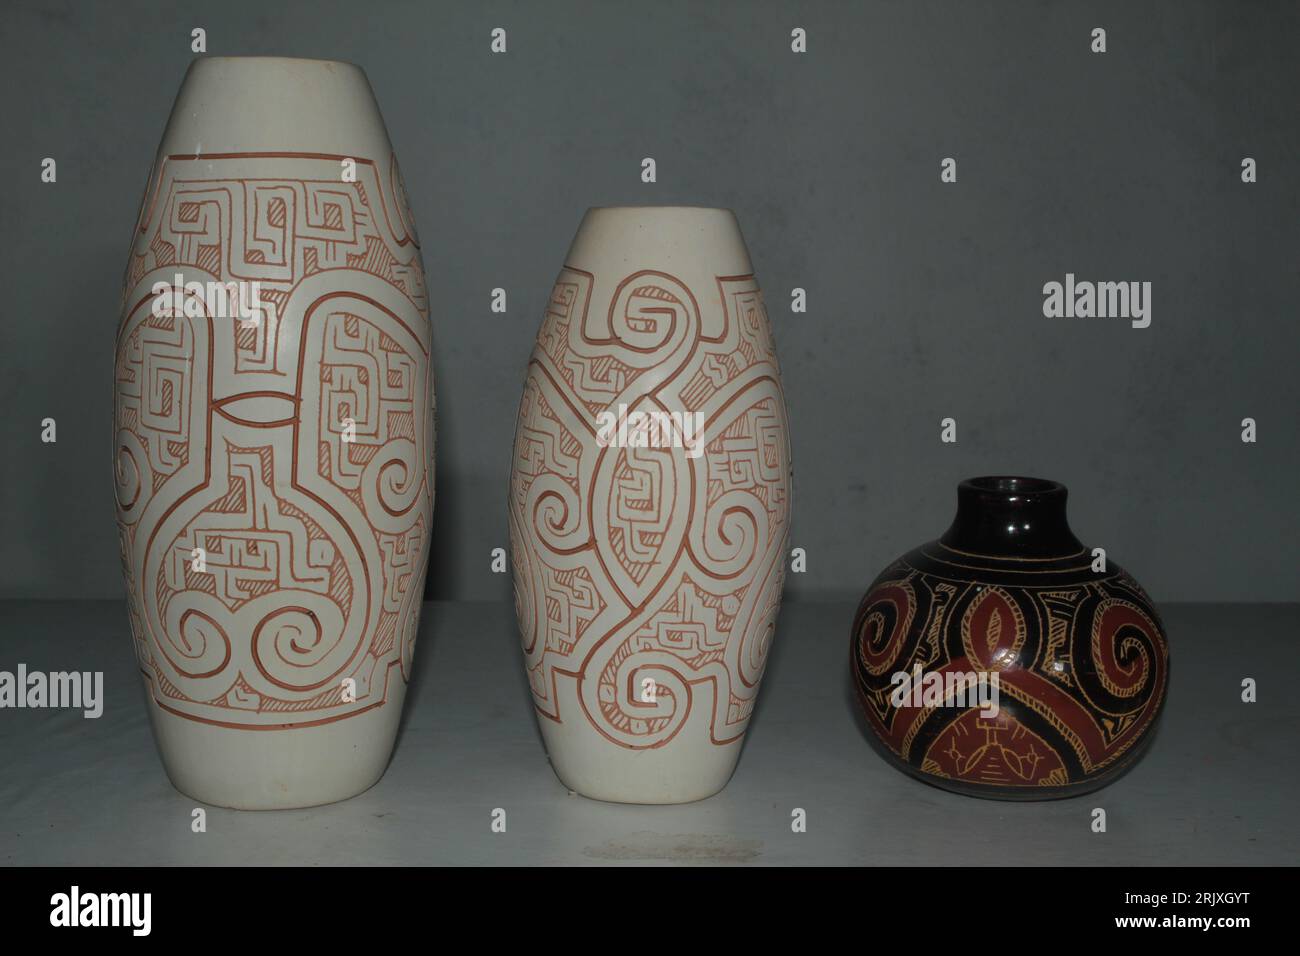 Amazon pottery immagini e fotografie stock ad alta risoluzione - Alamy